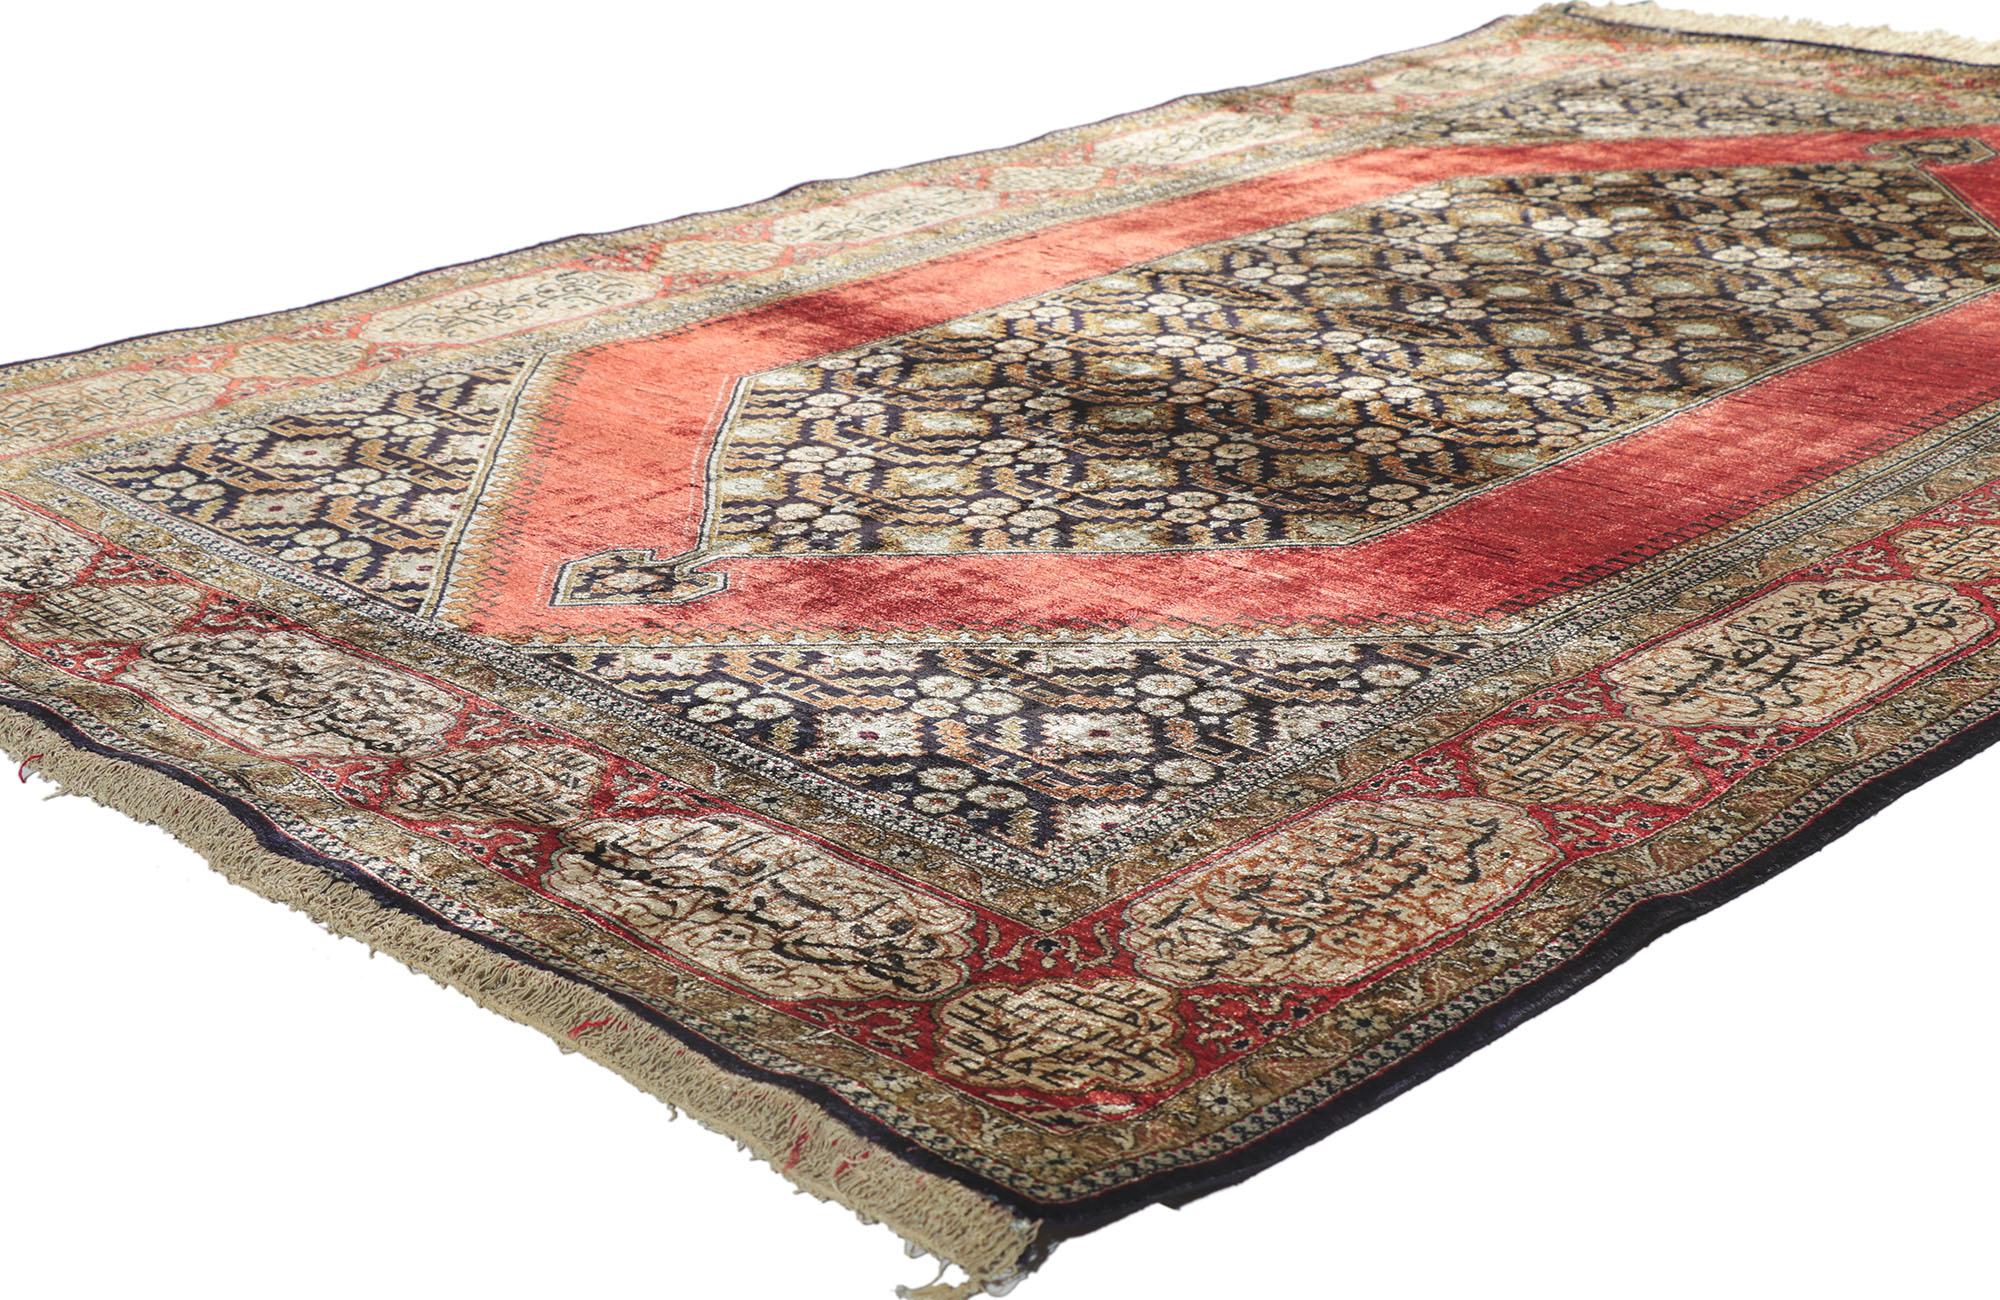 78187 Persischer Qum-Teppich aus Seide, 04'07 x 07'04. Mit seiner auffälligen Ausstrahlung und der satten roten Farbpalette wirkt dieser handgeknüpfte alte persische Qum-Teppich aus Seide wie ein prächtiger italienischer Samt und erinnert an die